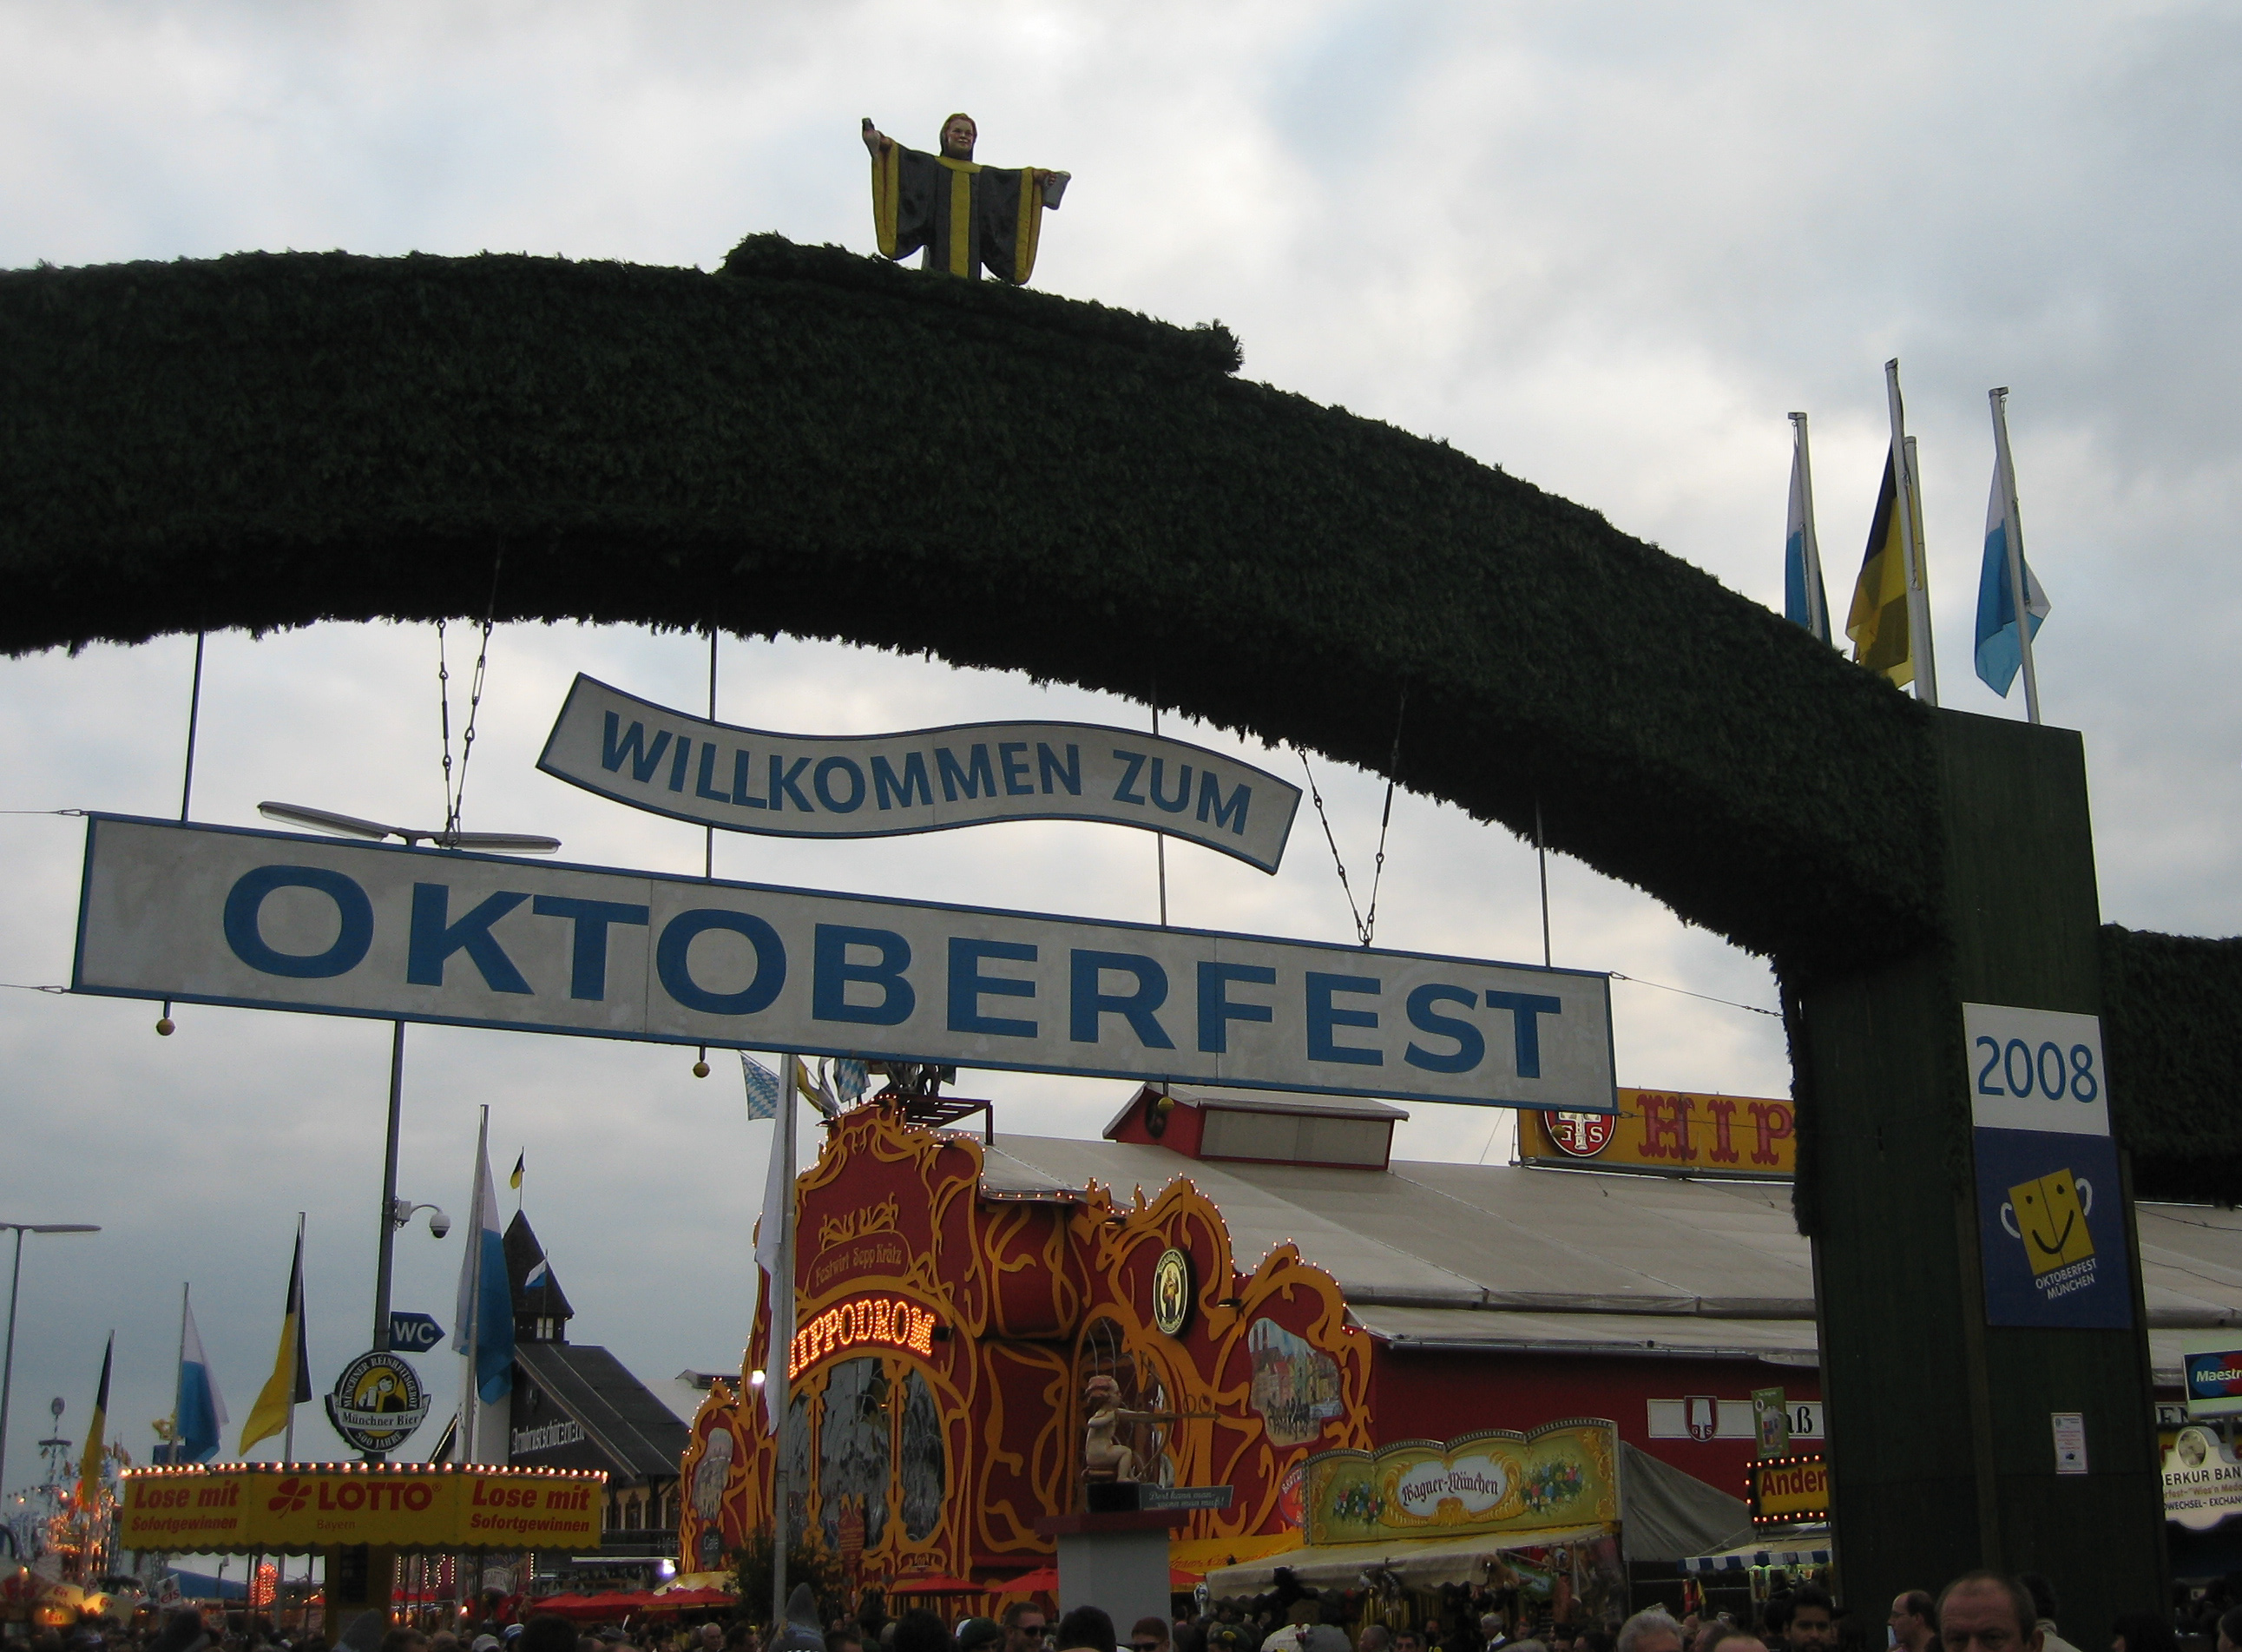 Σε ρυθμούς Oktoberfest κινείται η Γερμανία!